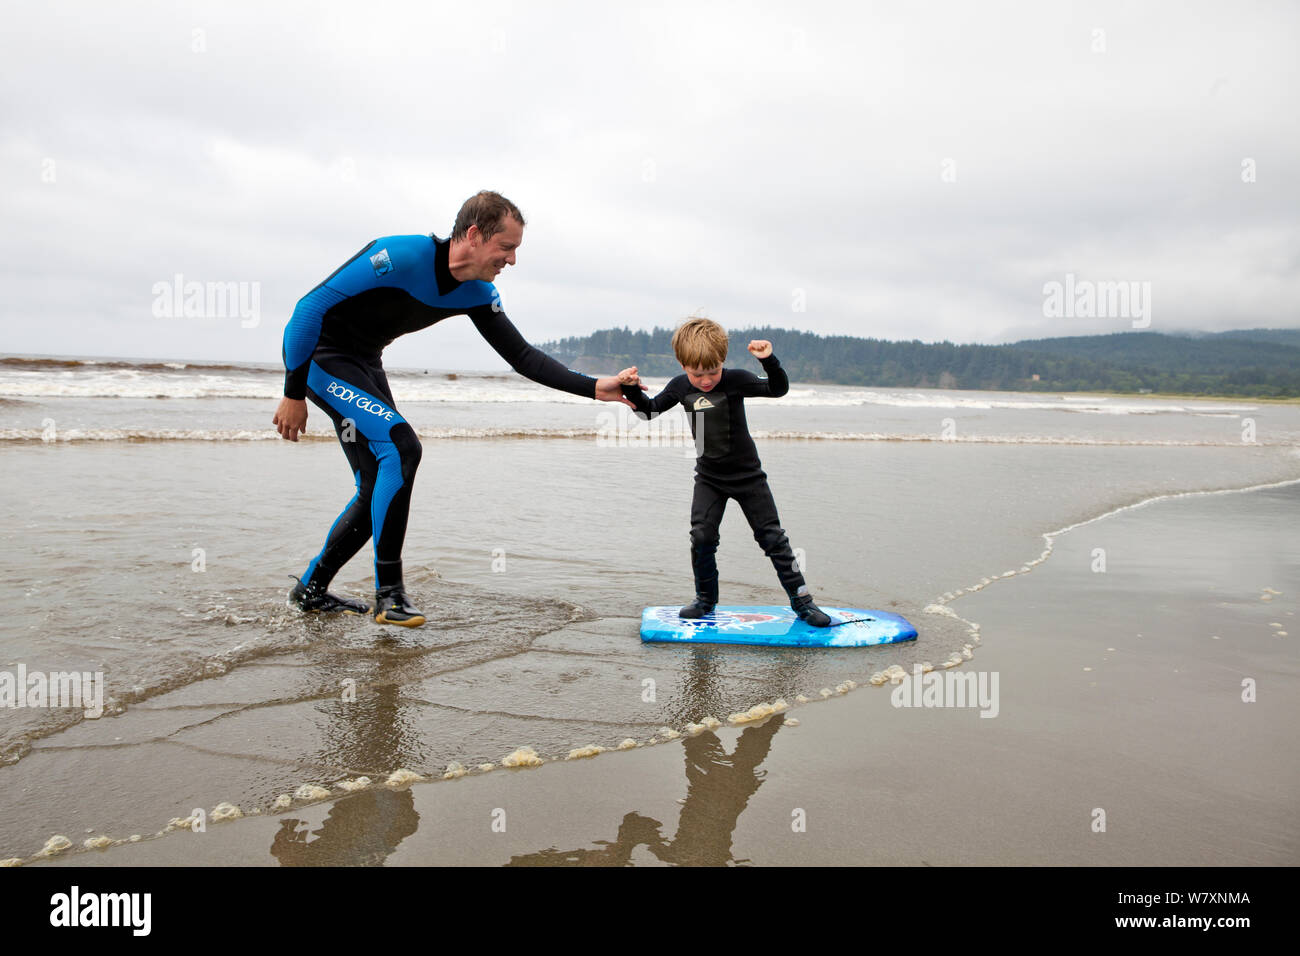 Nate Harrison d'enseigner son fils Gabriel comment surfer, Hobuck Beach, réserve Makah, Washington, USA, août 2014. Parution du modèle. Parution du modèle. Banque D'Images